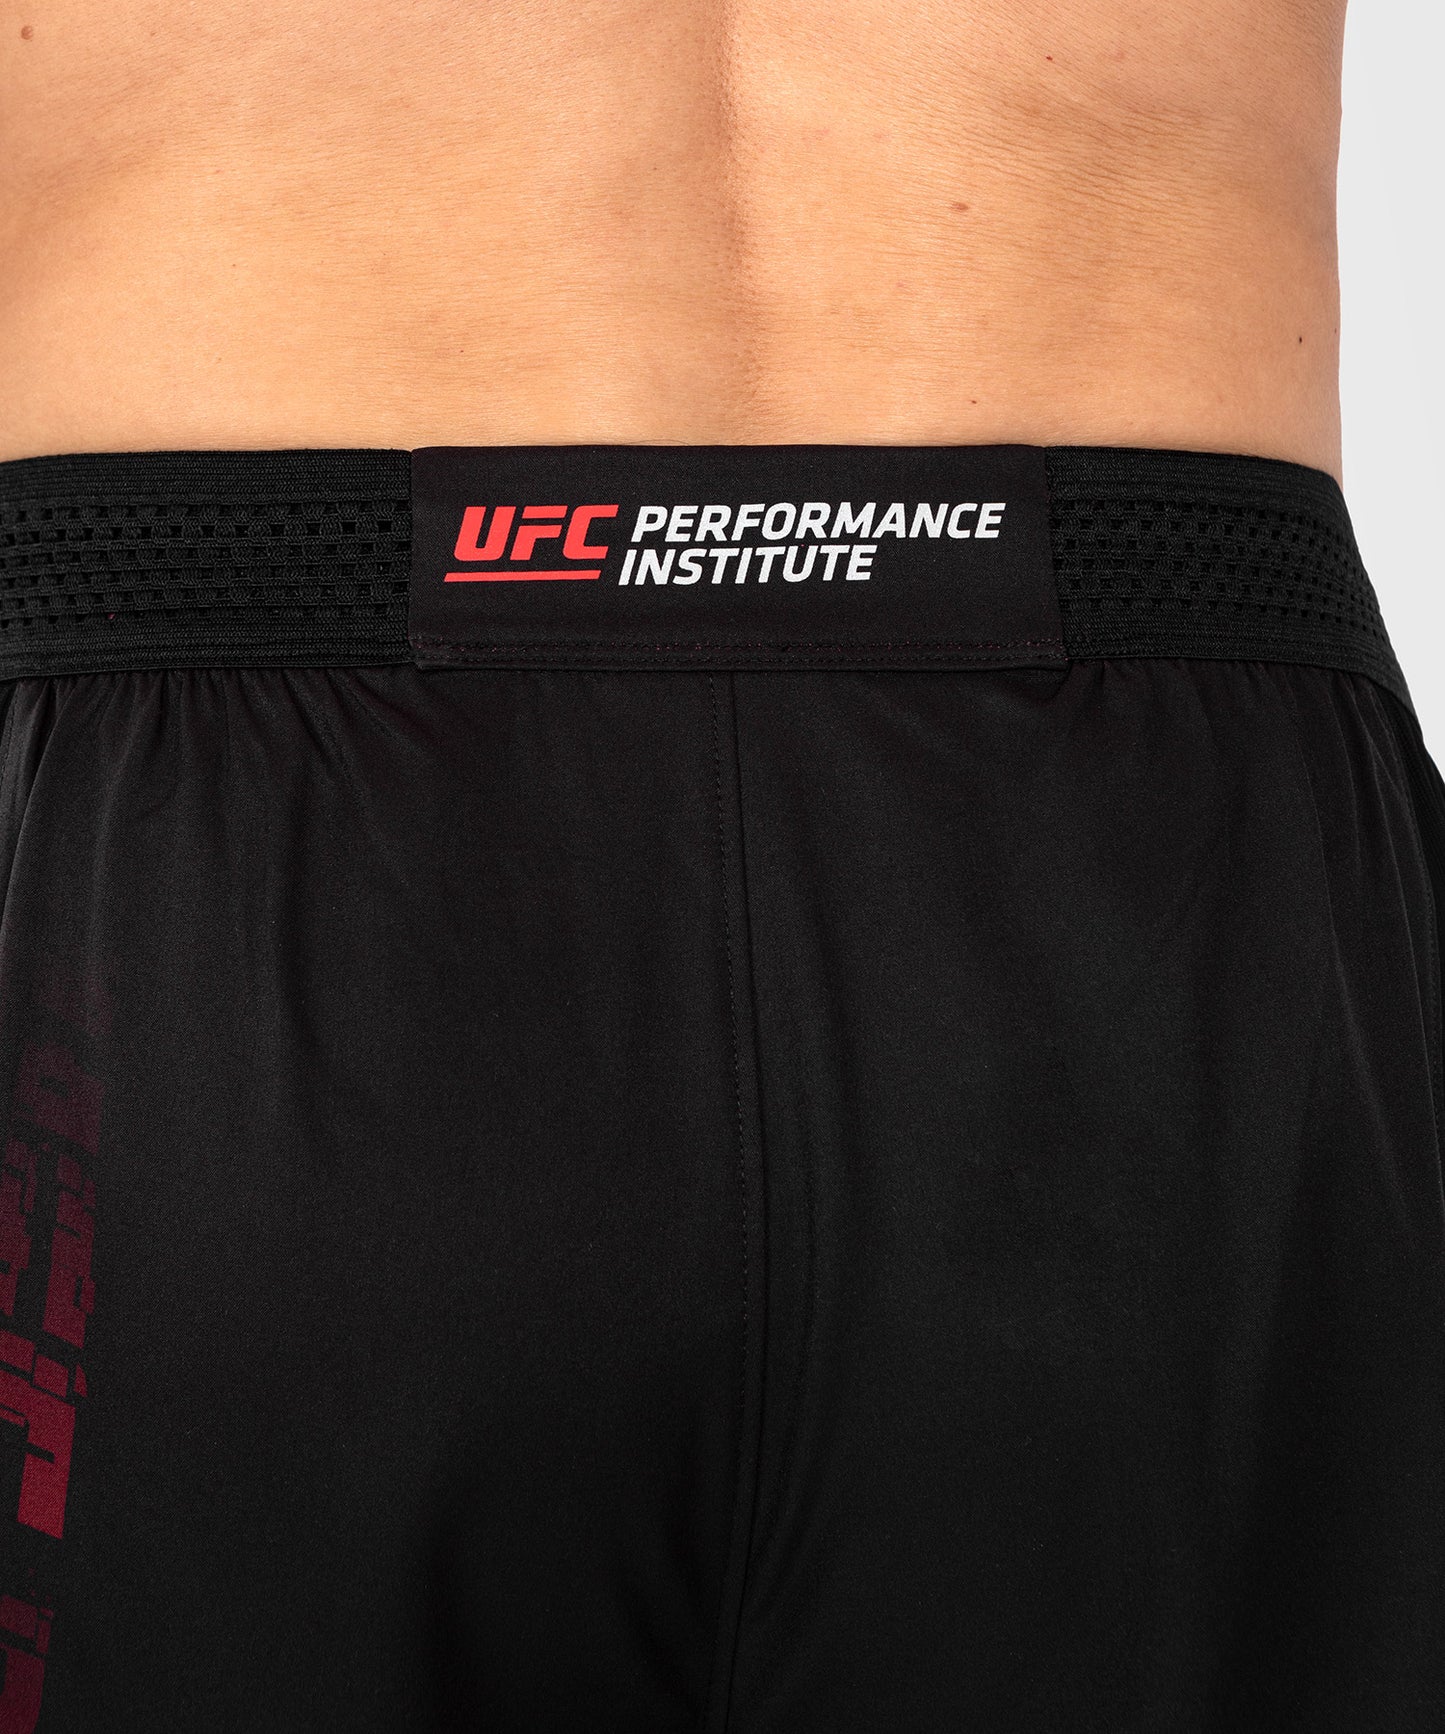 Short de performance pour hommes UFC Venum Performance Institute 2.0 - Noir/Rouge